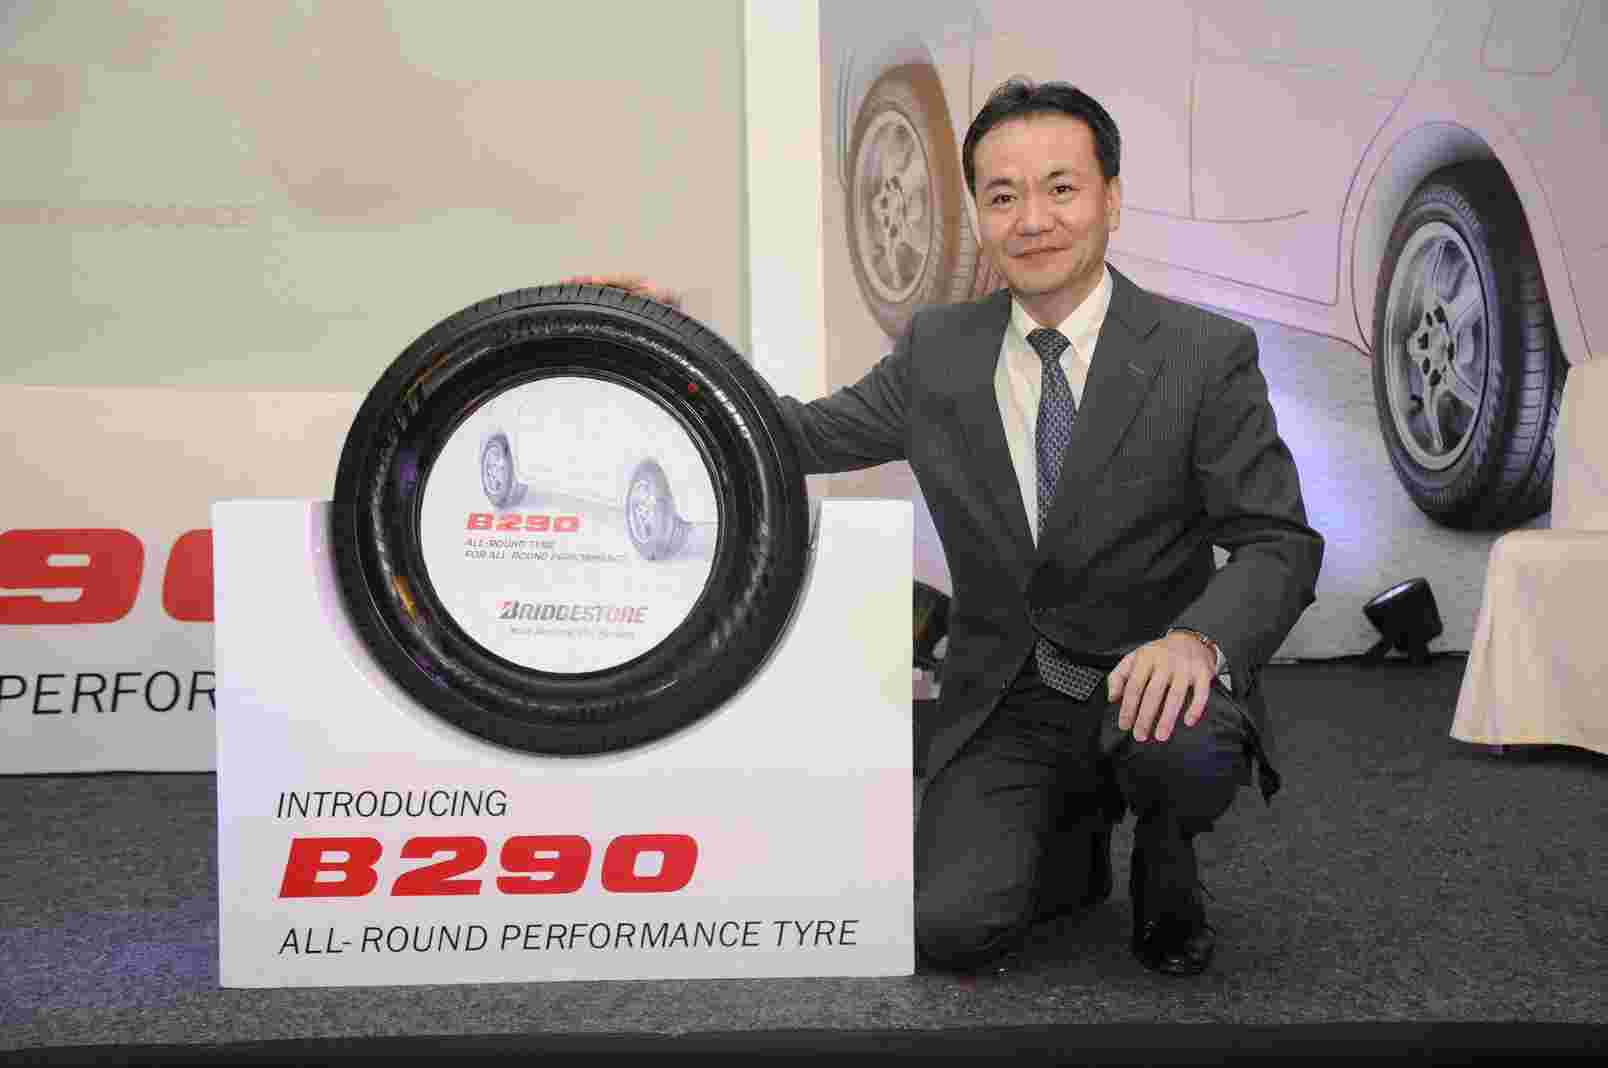 普利司通推出新的B290轮胎范围